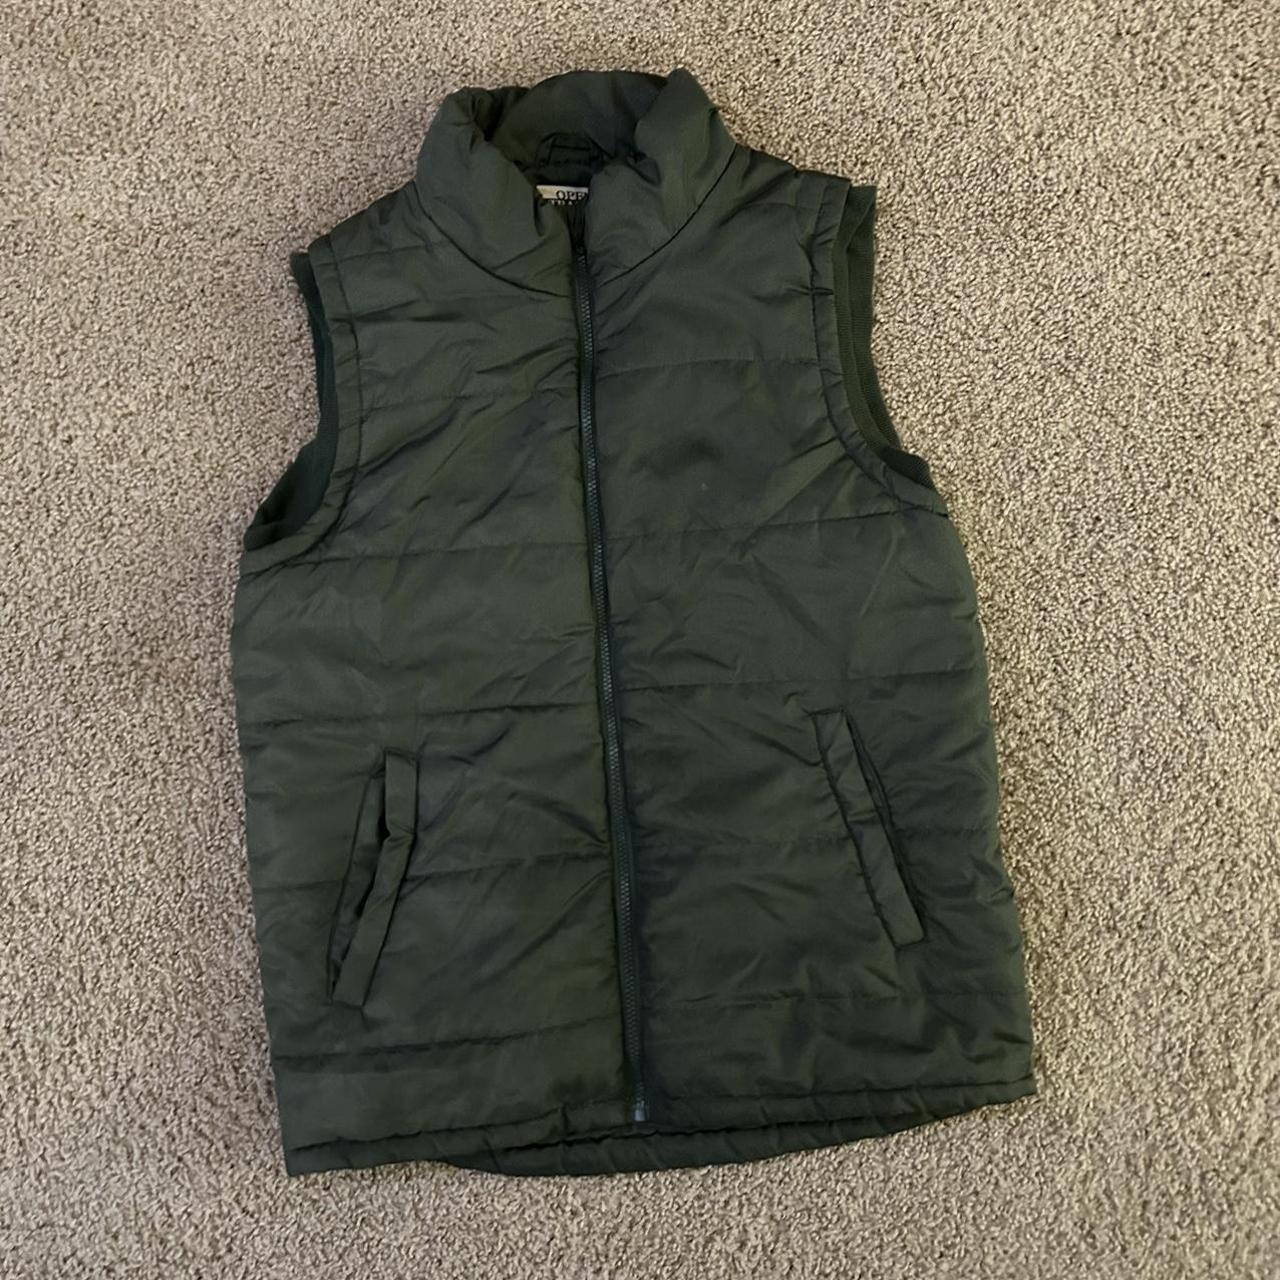 Green Men’s Vintage Puffer Vest, fits like Large,... - Depop